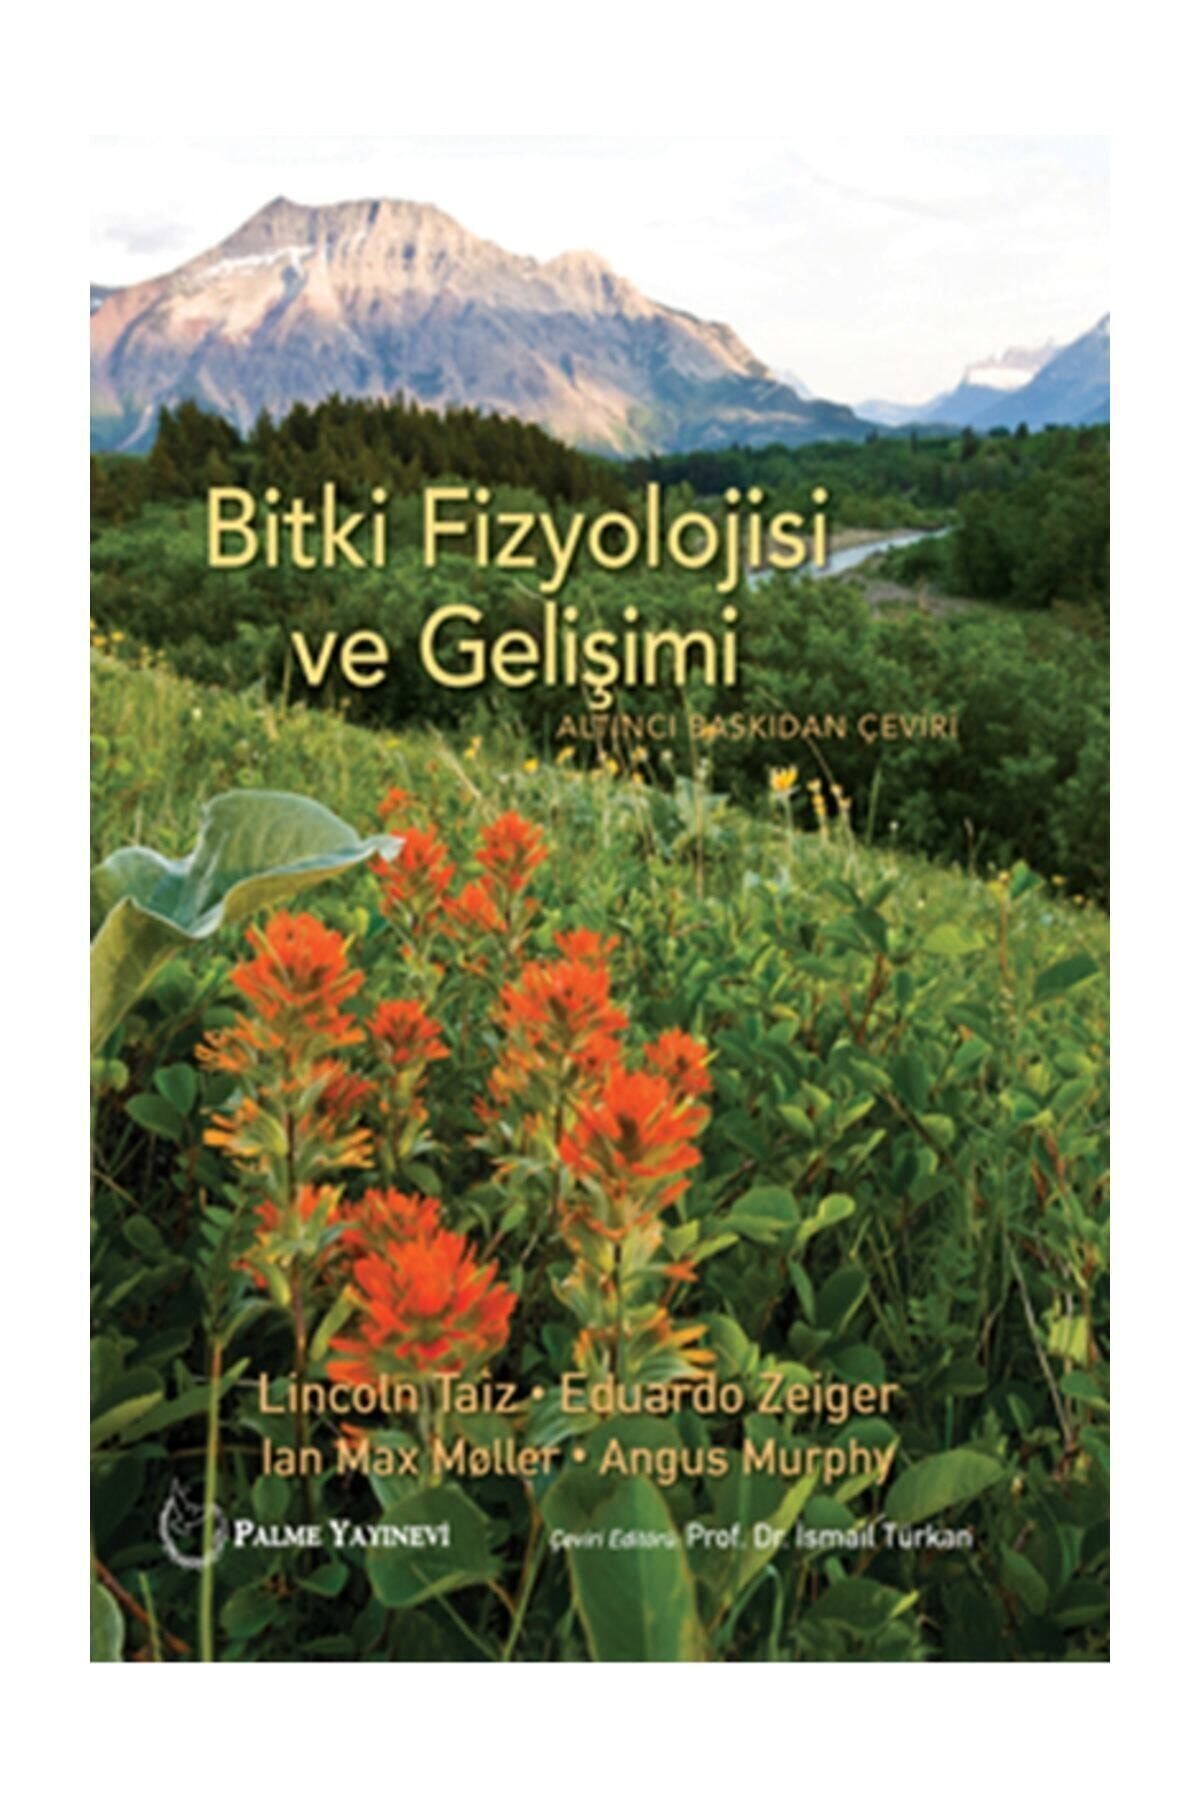 Palme Yayınevi Bitki Fizyolojisi Ve Gelişimi Kitabi - Angus Murphy,Eduardo Zeiger,Ian Max Moller,Lincoln Taiz